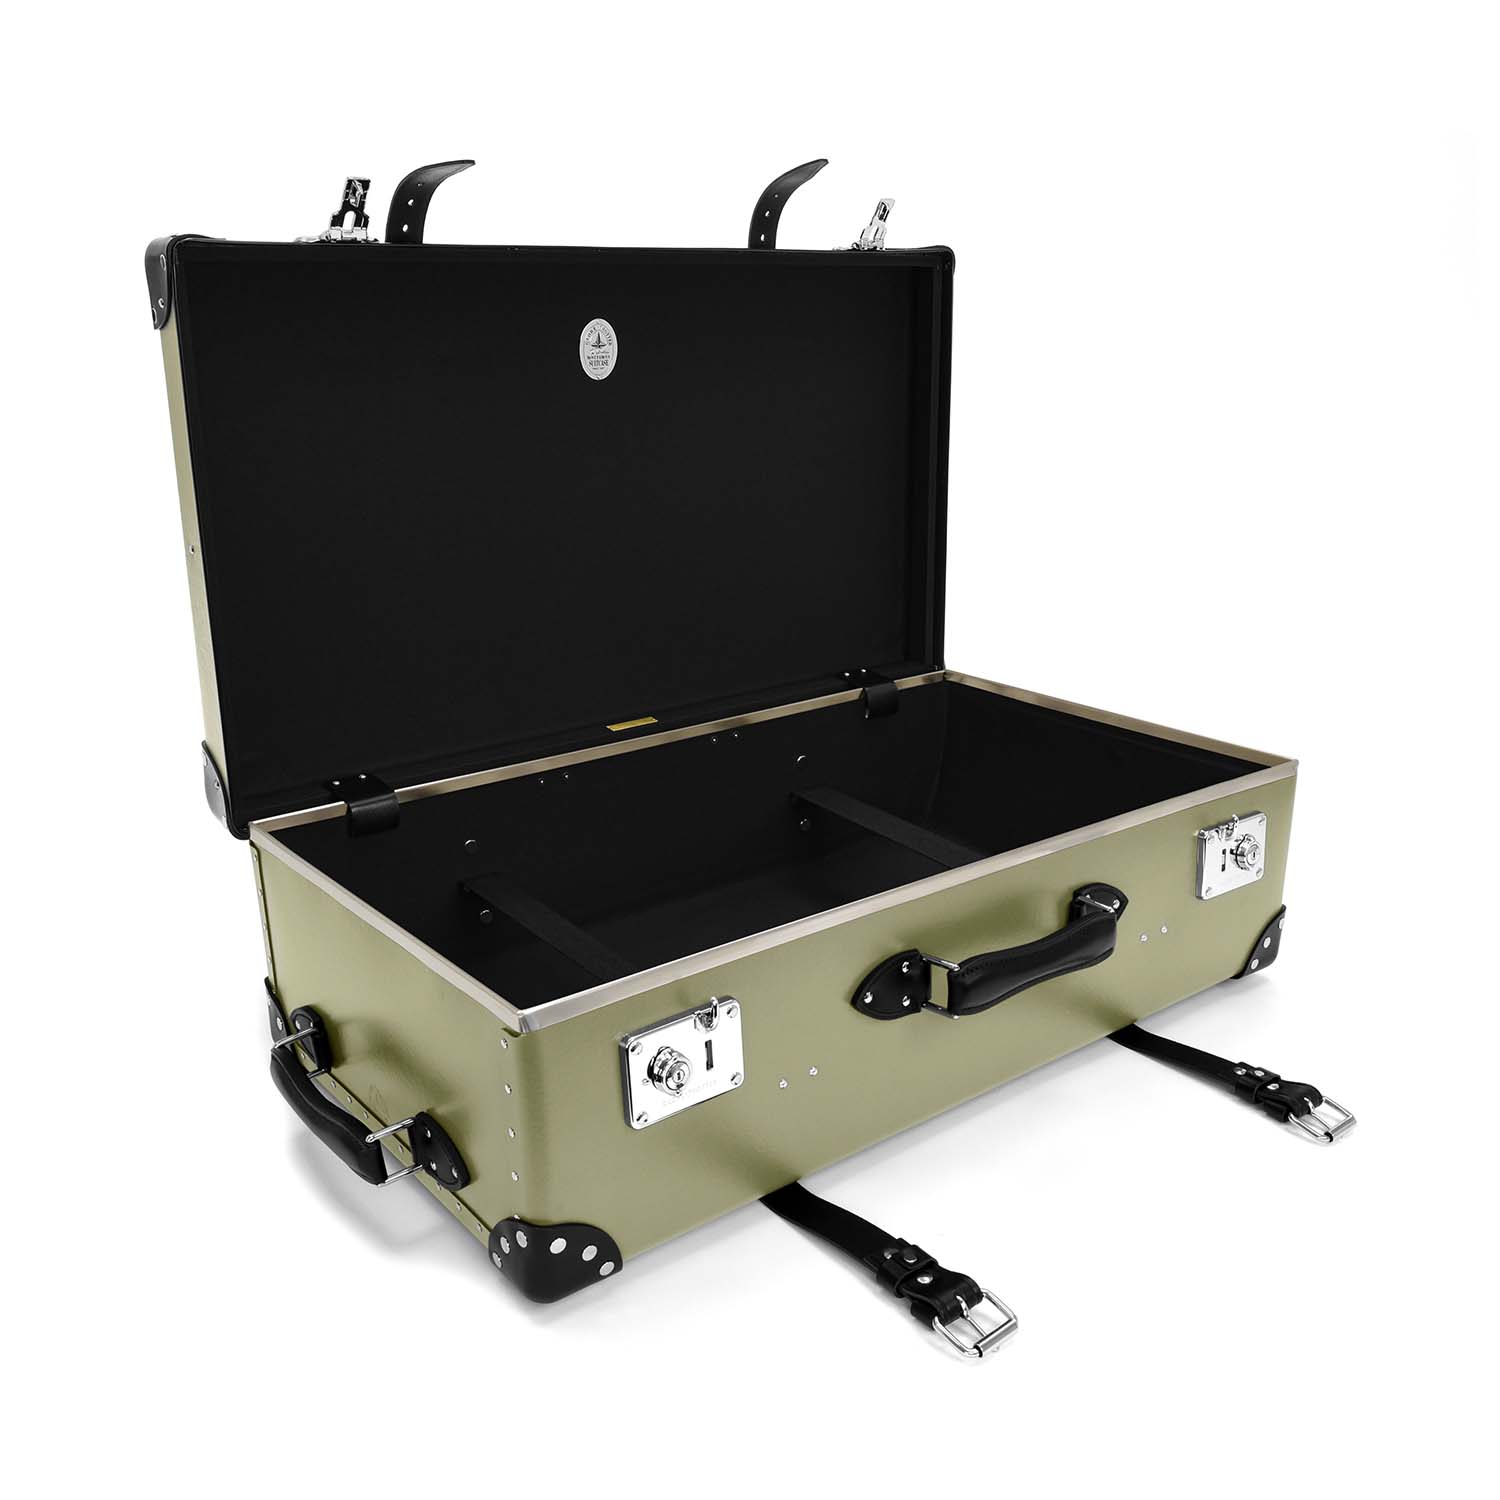 Centenary · Large Suitcase - 2 Wheels | Olive/Black/Chrome